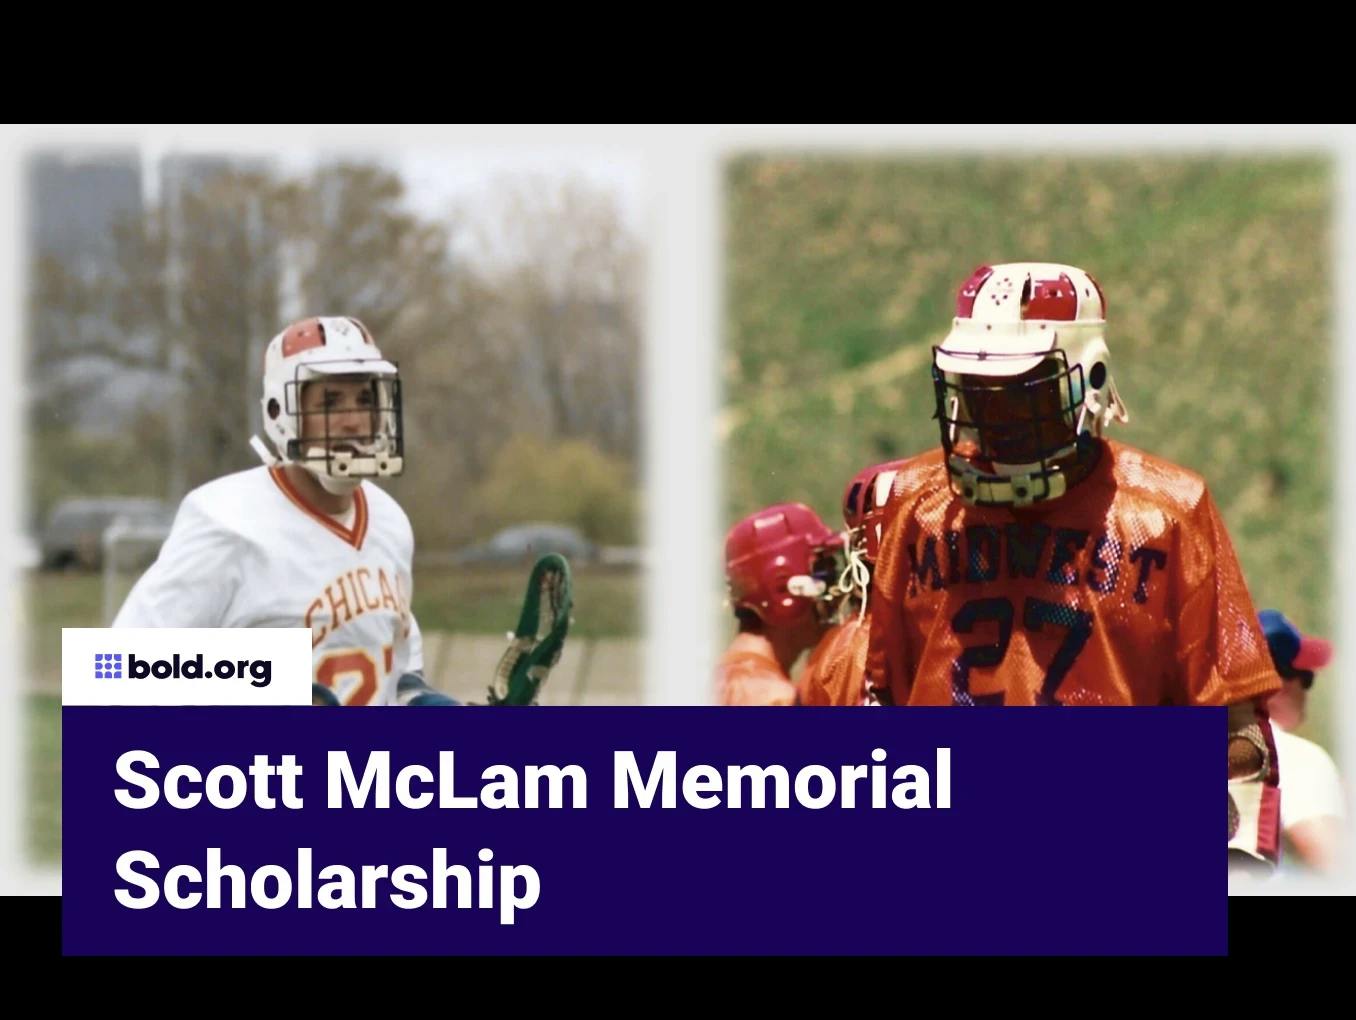 Scott McLam Memorial Scholarship Fund